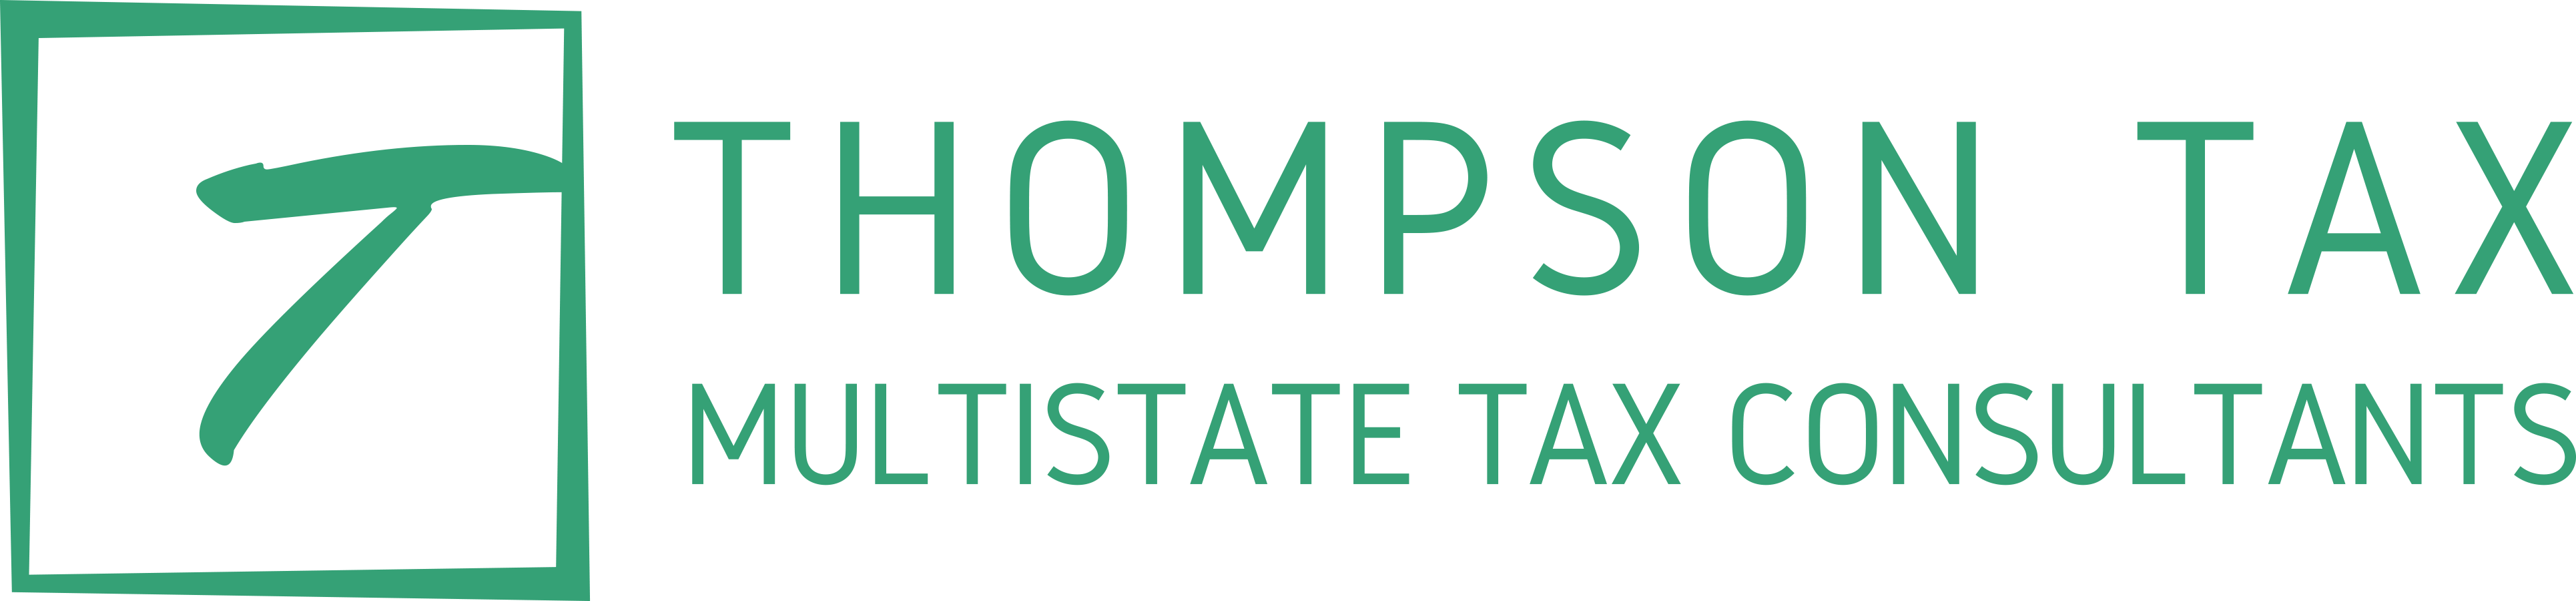 Thompson Tax